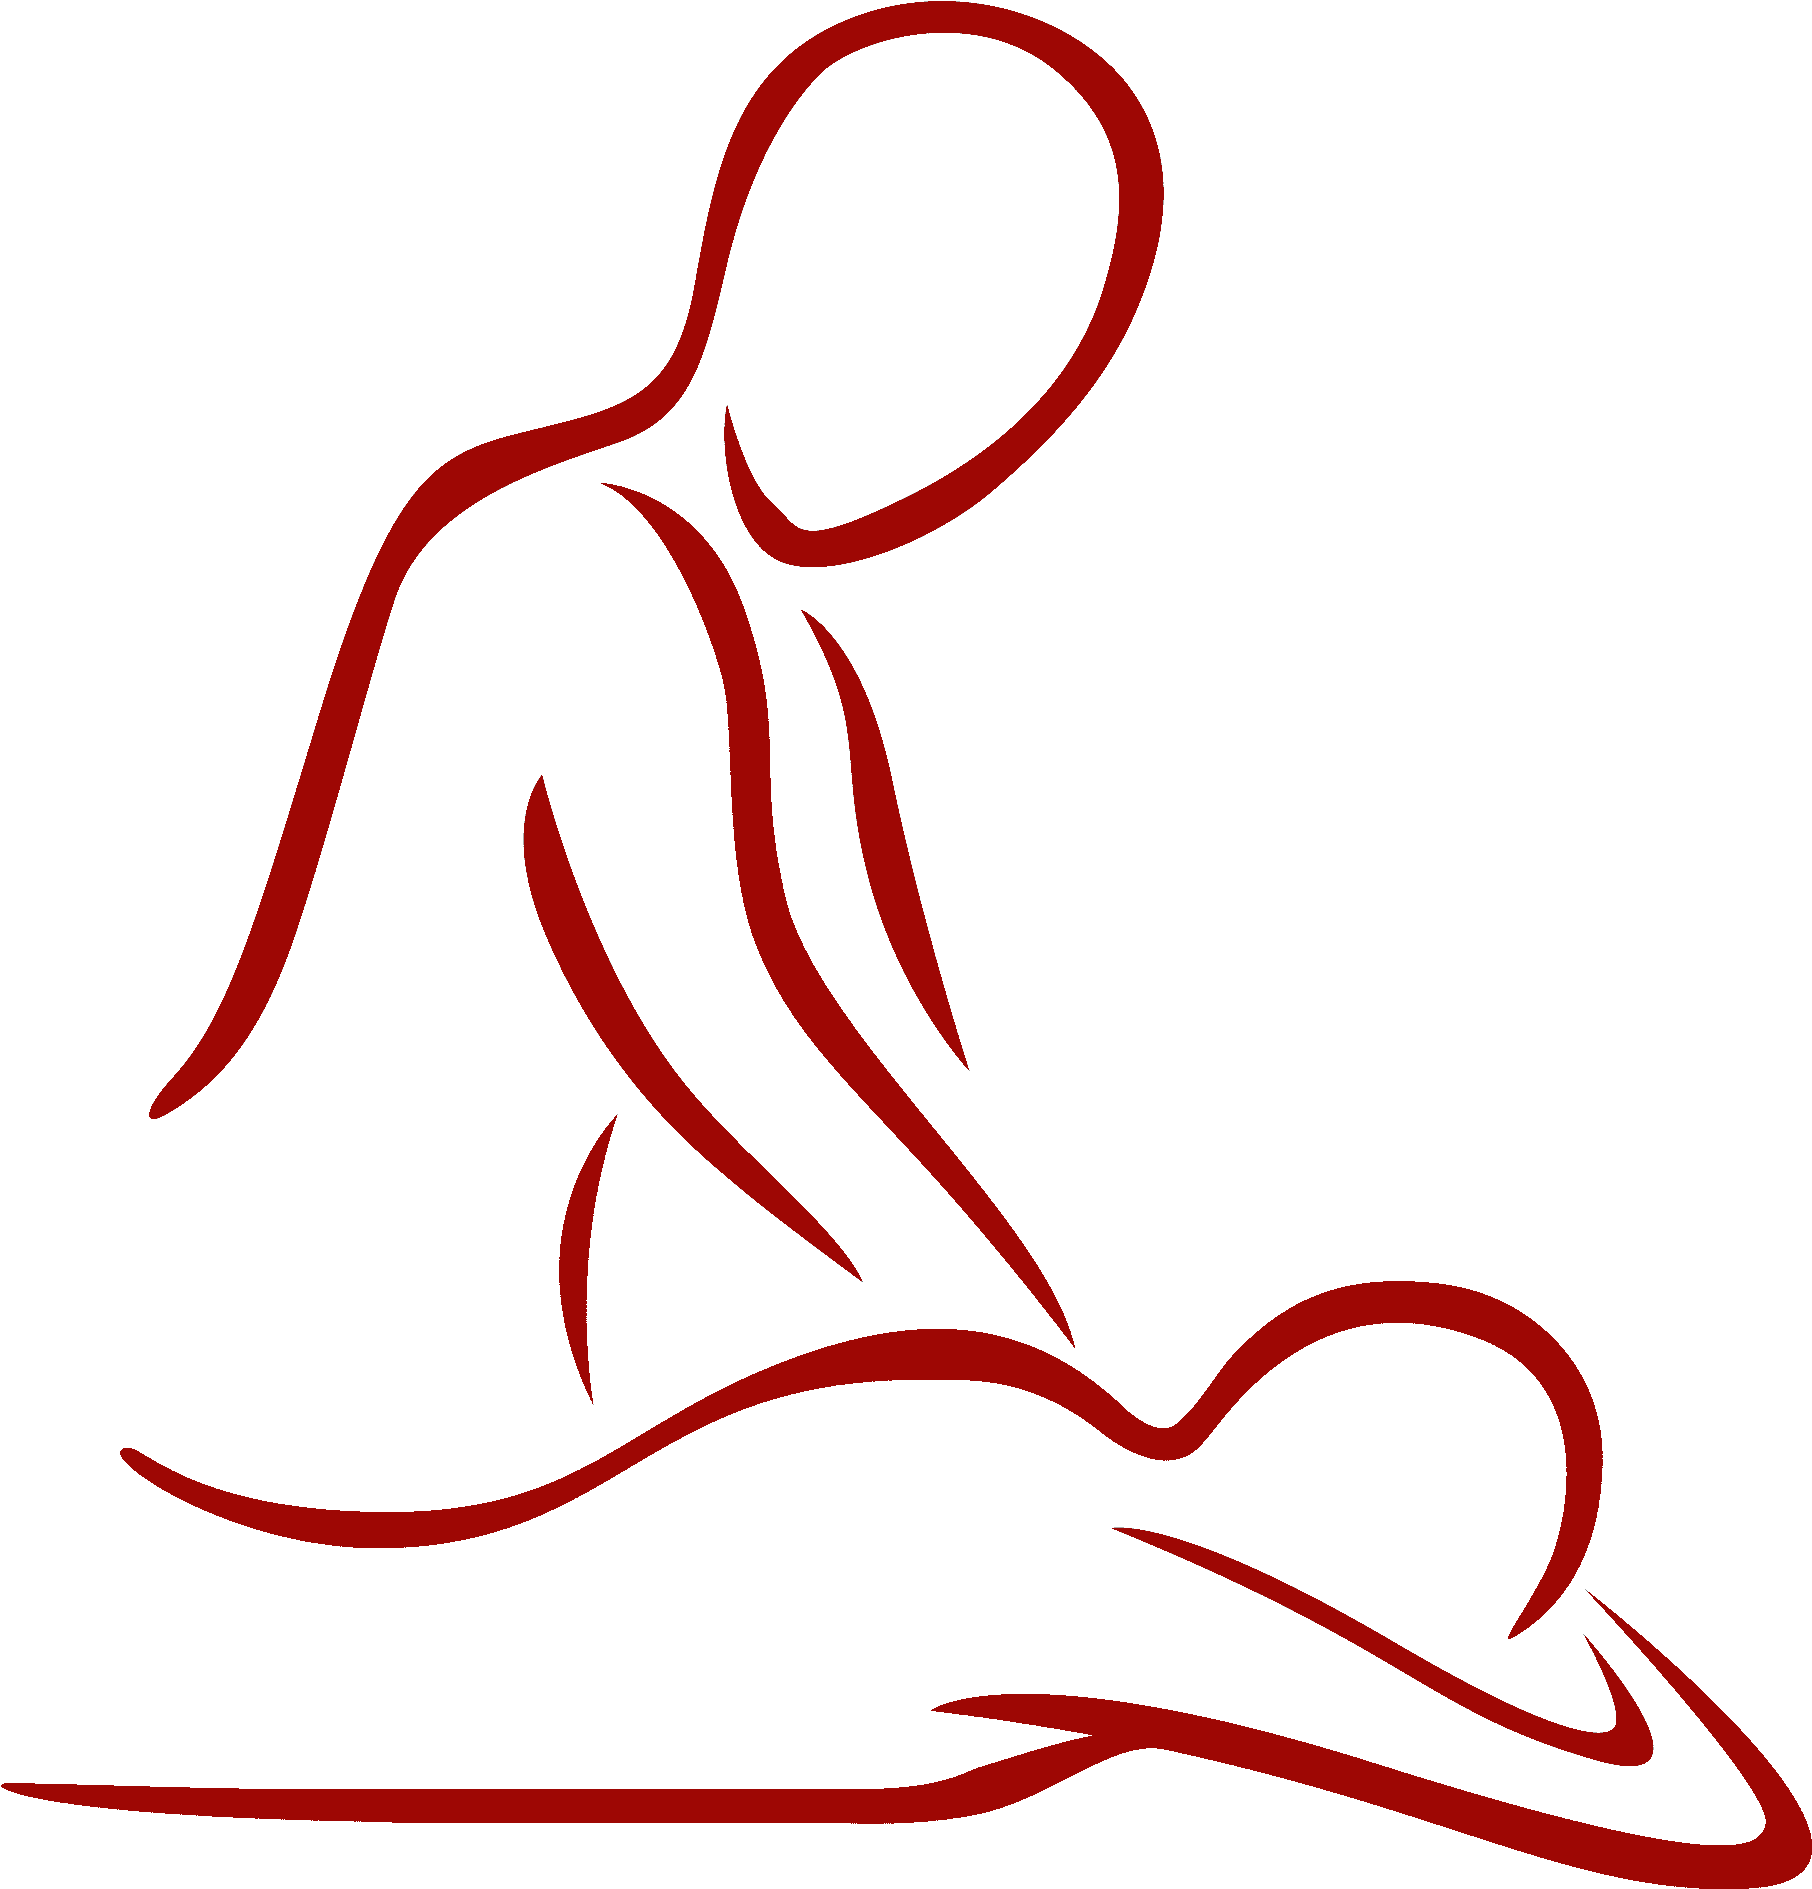 Healing Hands – Ayurvedic Yoga massage and reiki healing